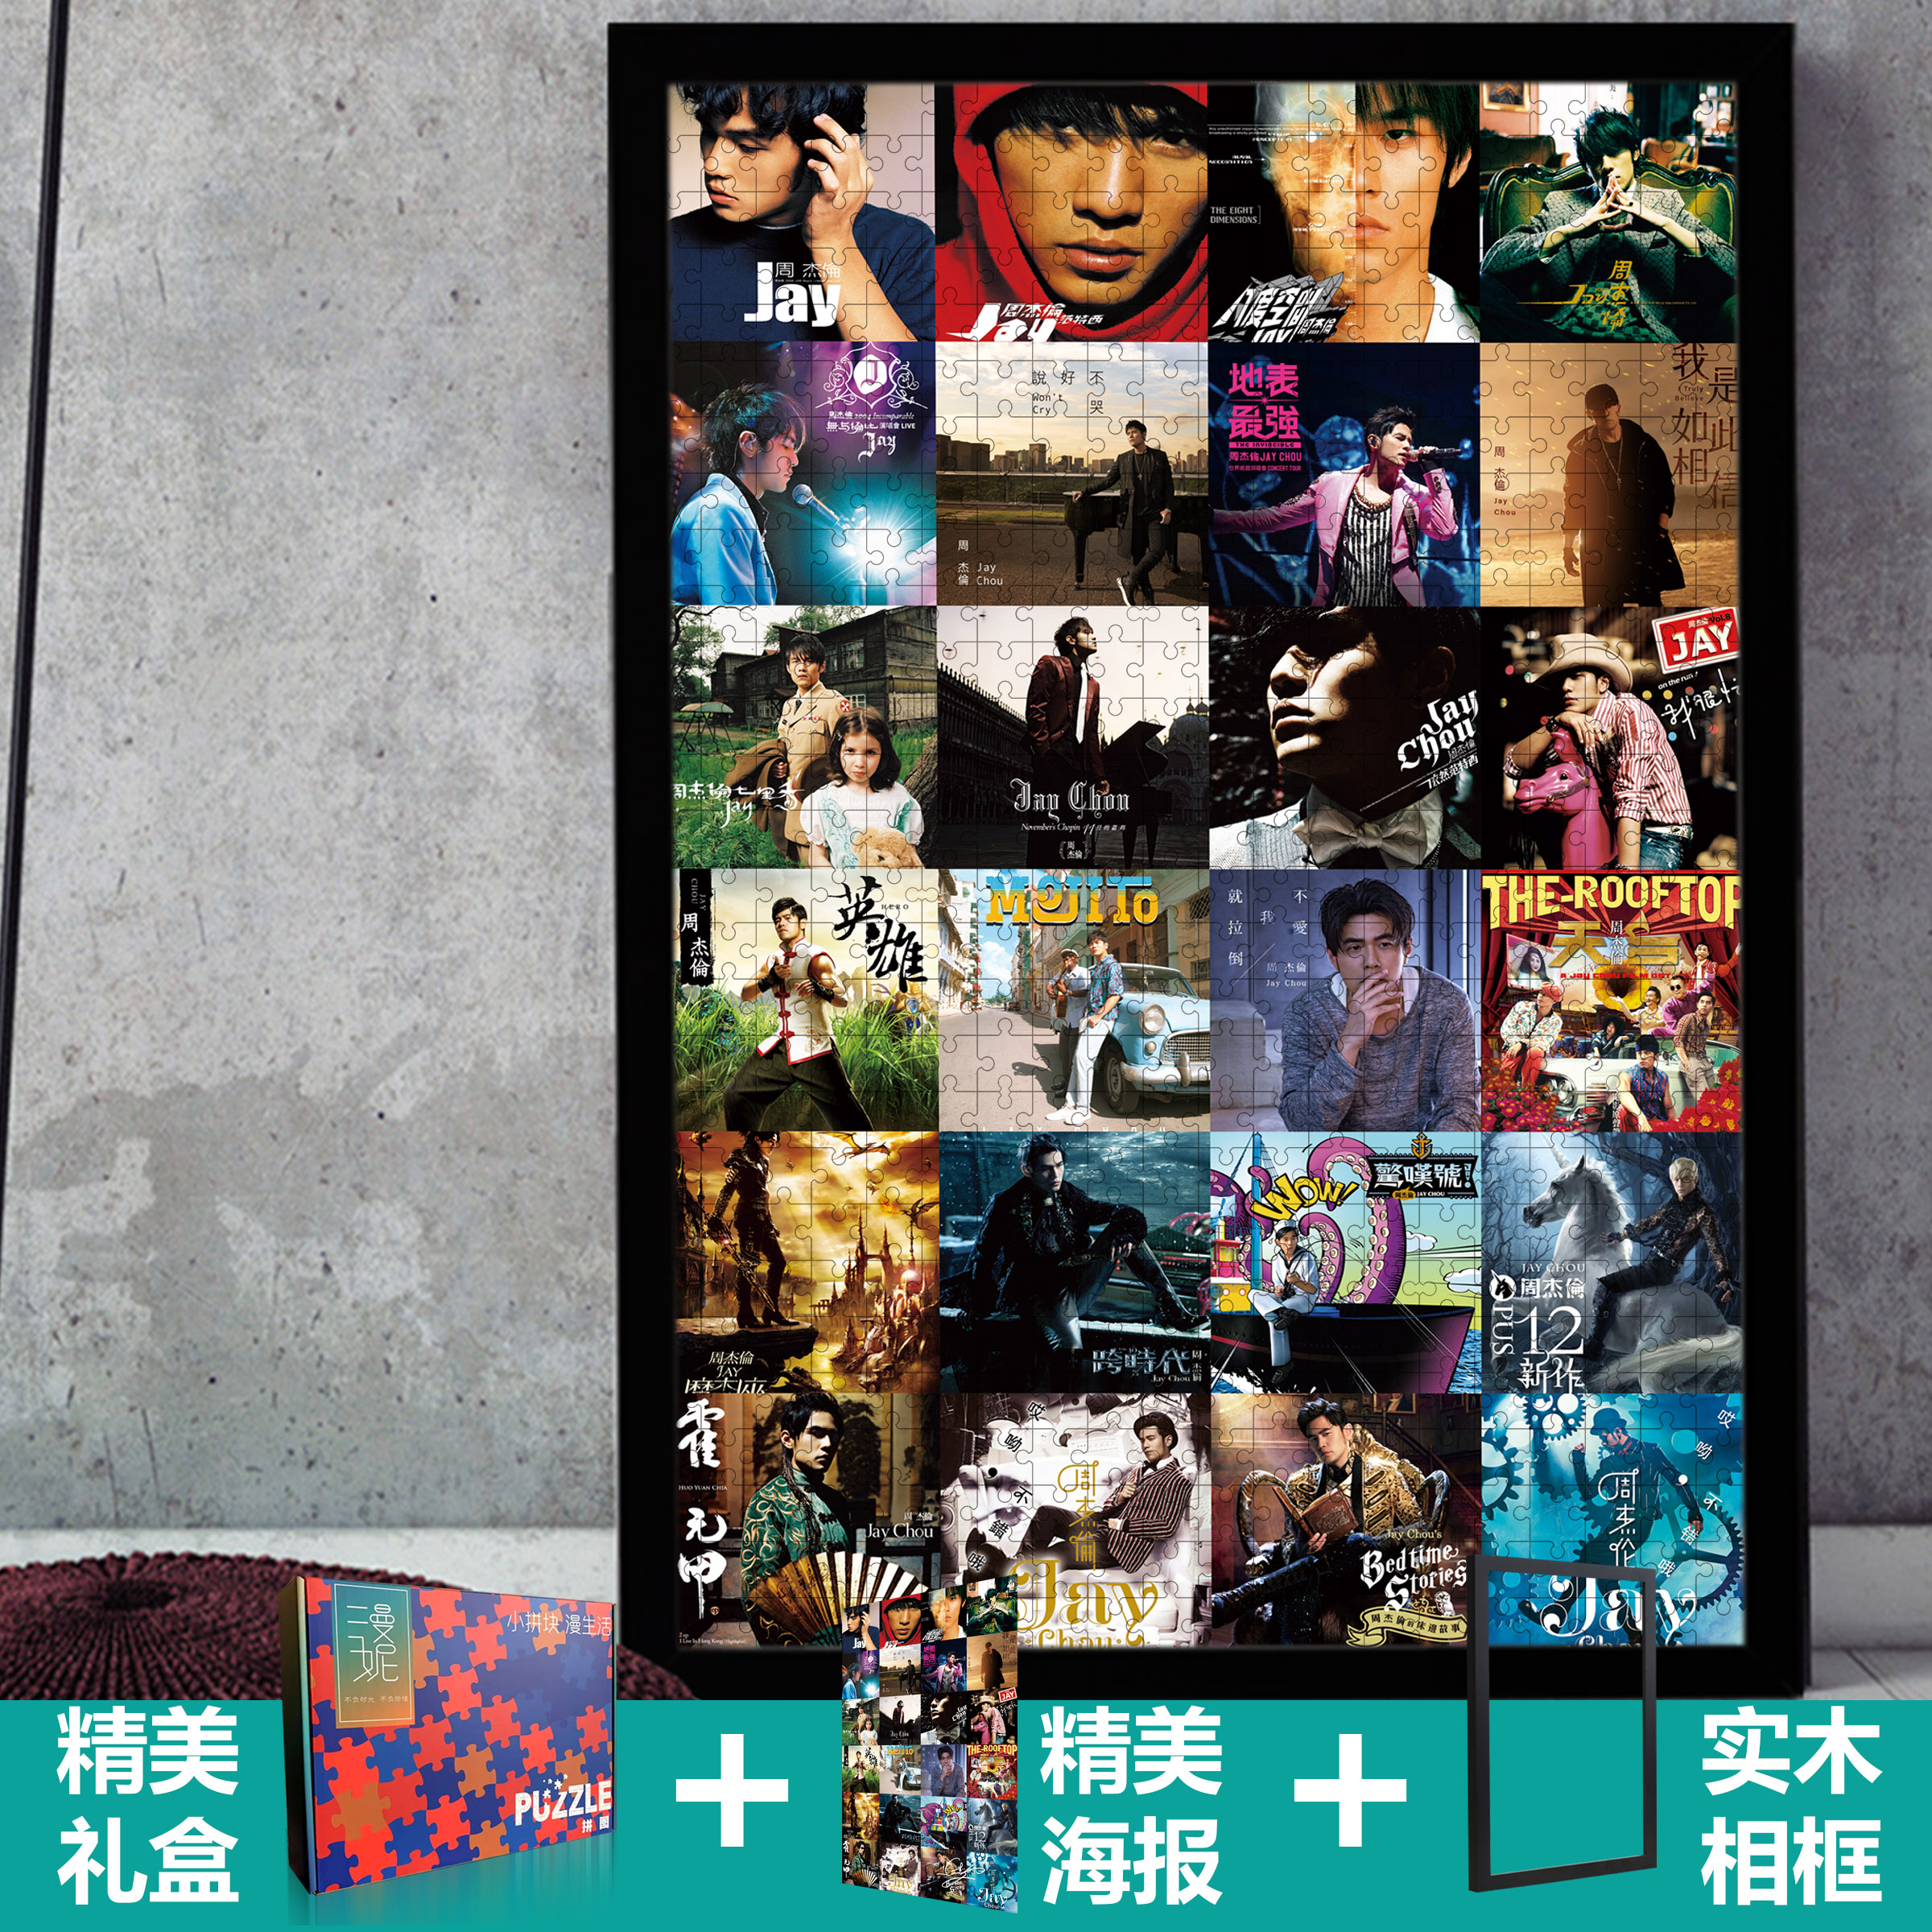 jay周杰伦出道20周年木质拼图纪念专辑封面合集海报带框杰伦周边